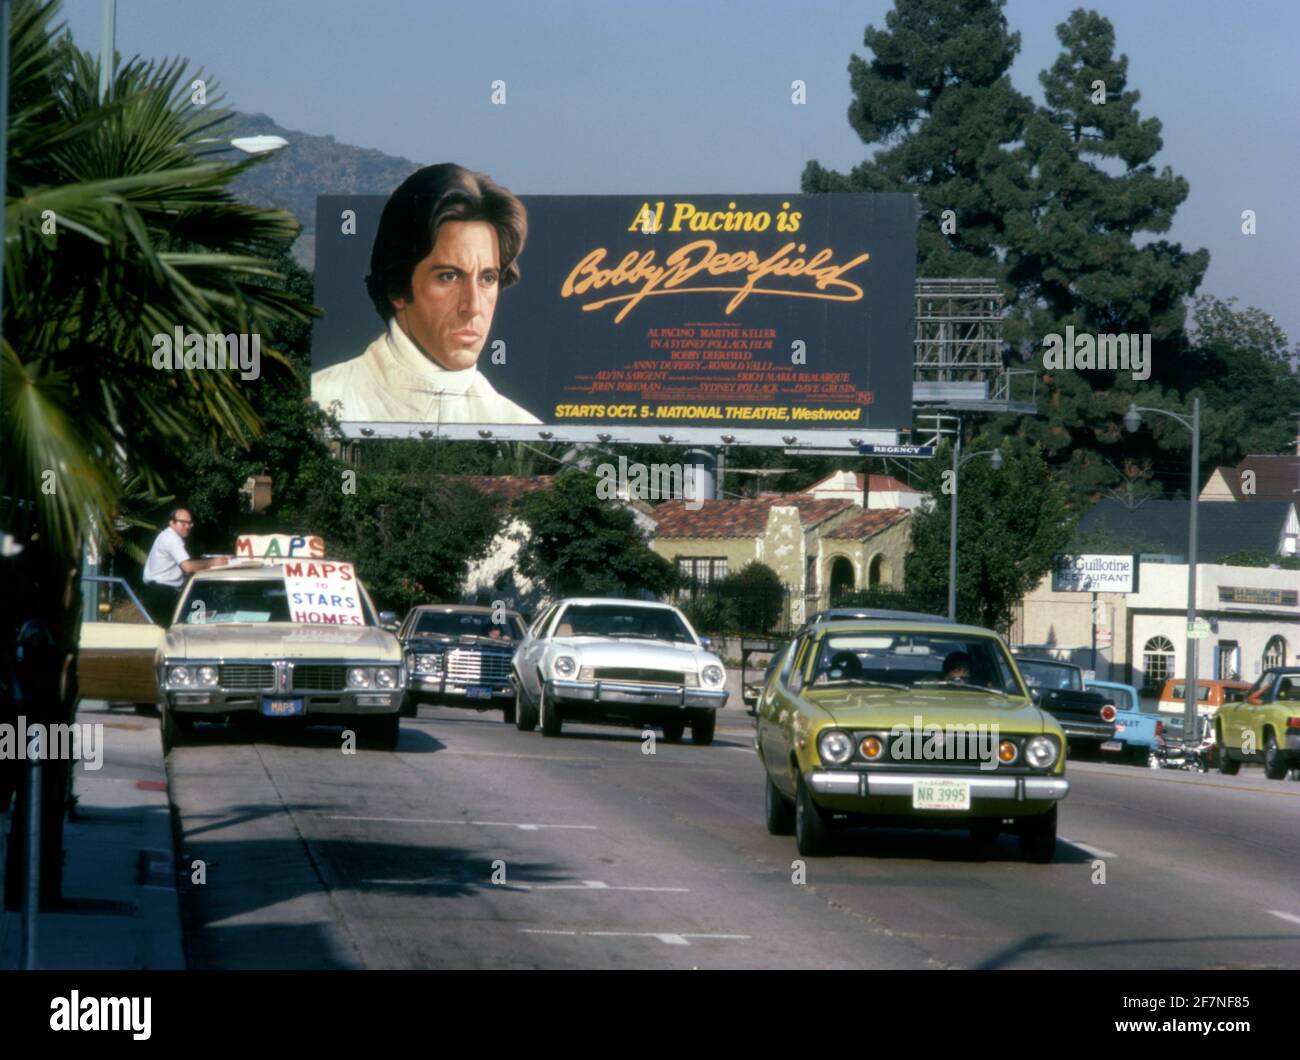 Al Pacino su cartellone per il film Bobby Deerfield sulla Sunset Strip a Los Angeles, CA con un uomo che vende mappe alle case delle stelle dal suo vagone della stazione parcheggiata, circa 1977 Foto Stock